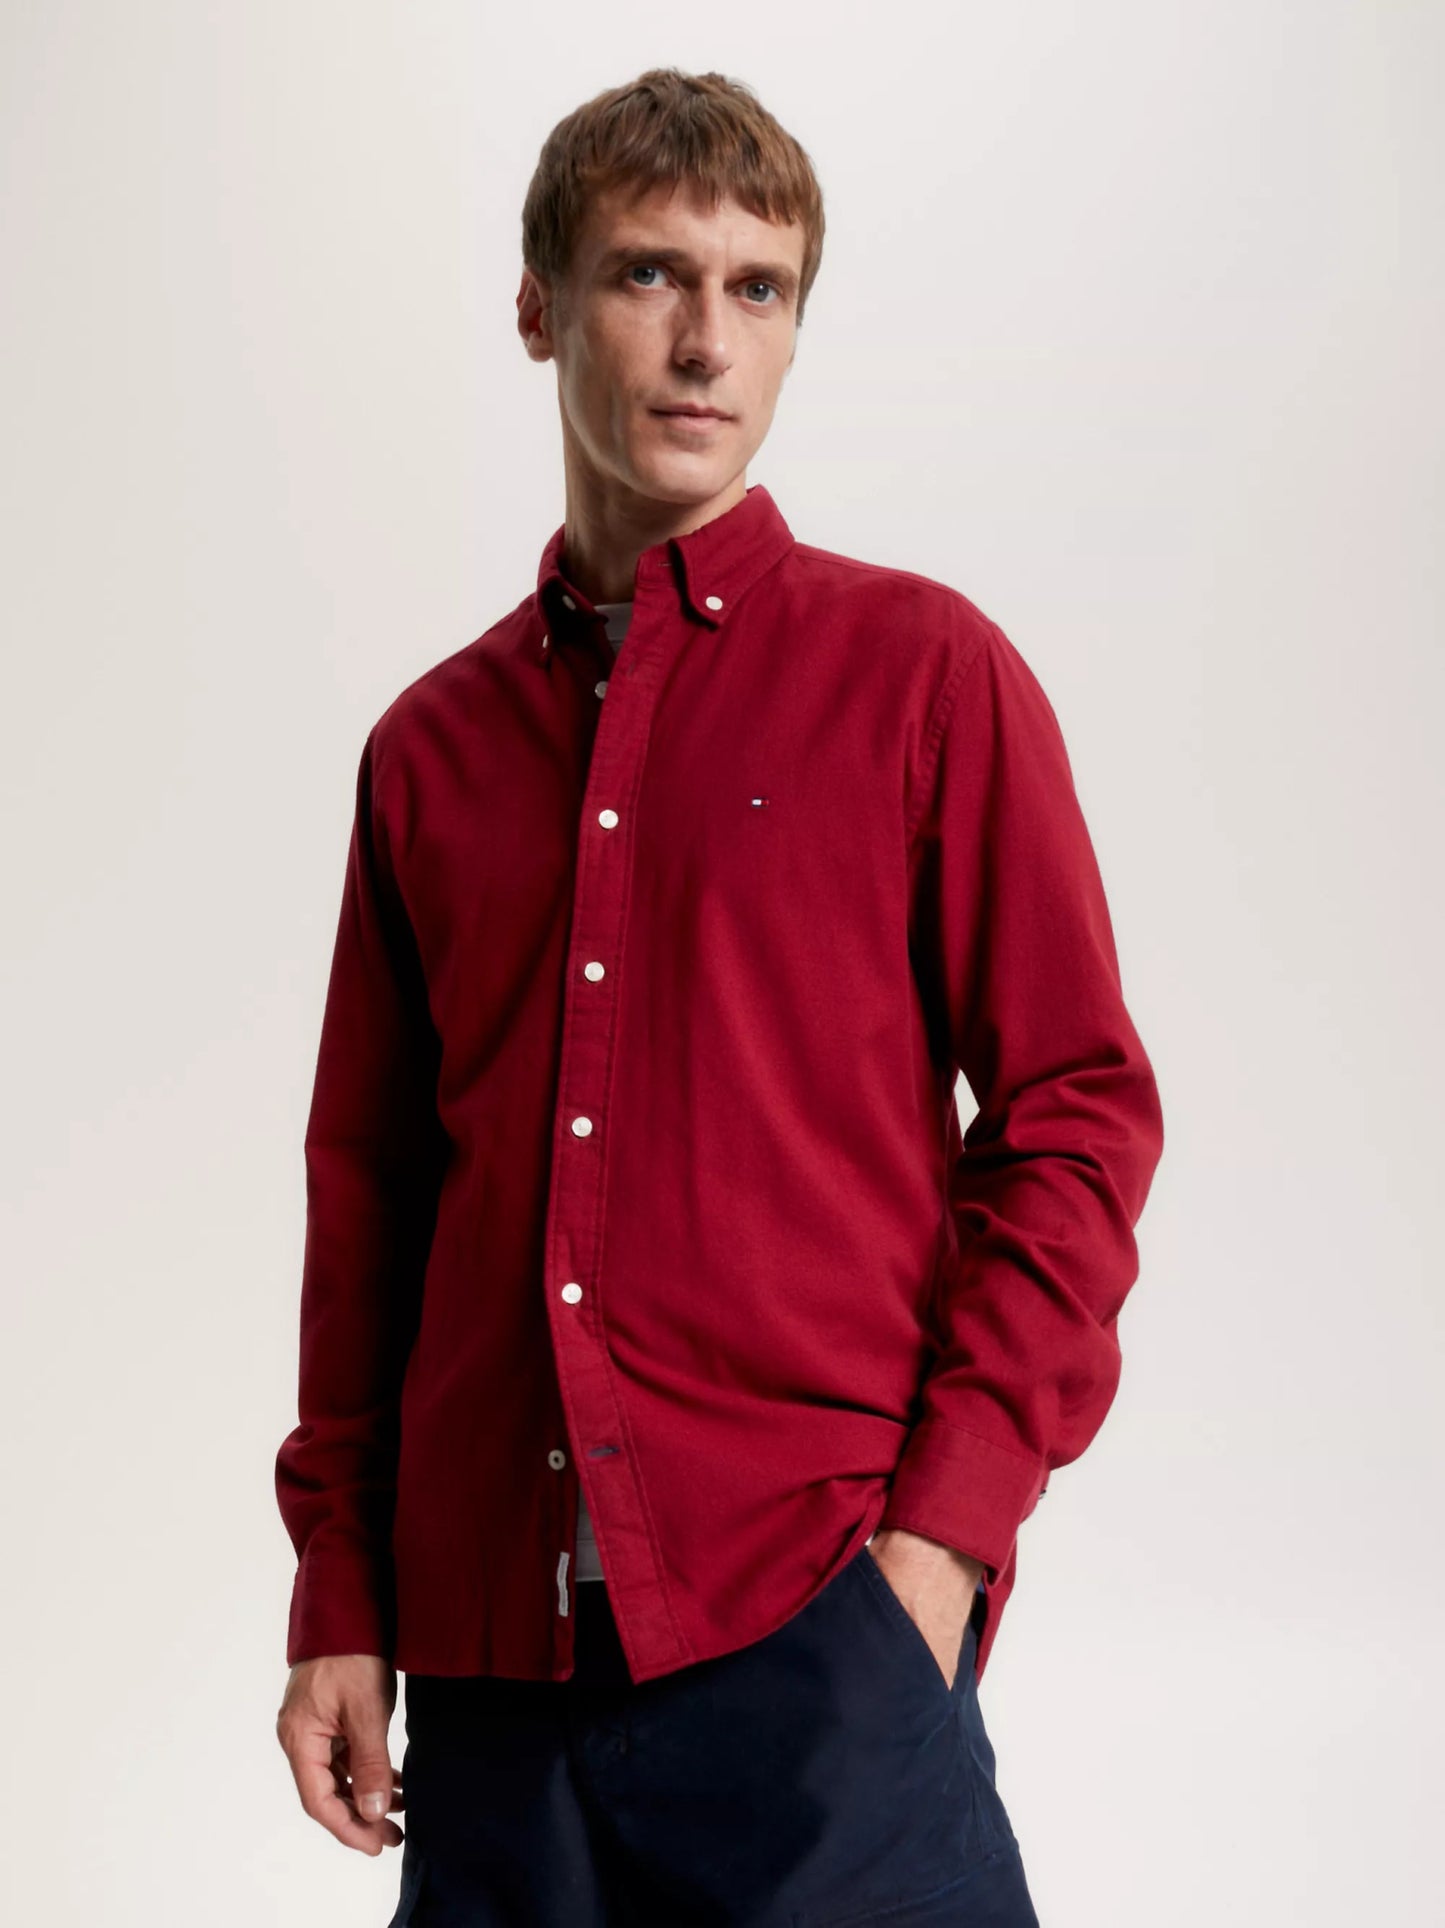 Tommy Hilfiger Brushed Twill RF Shirt - Matt O'Brien Fashions